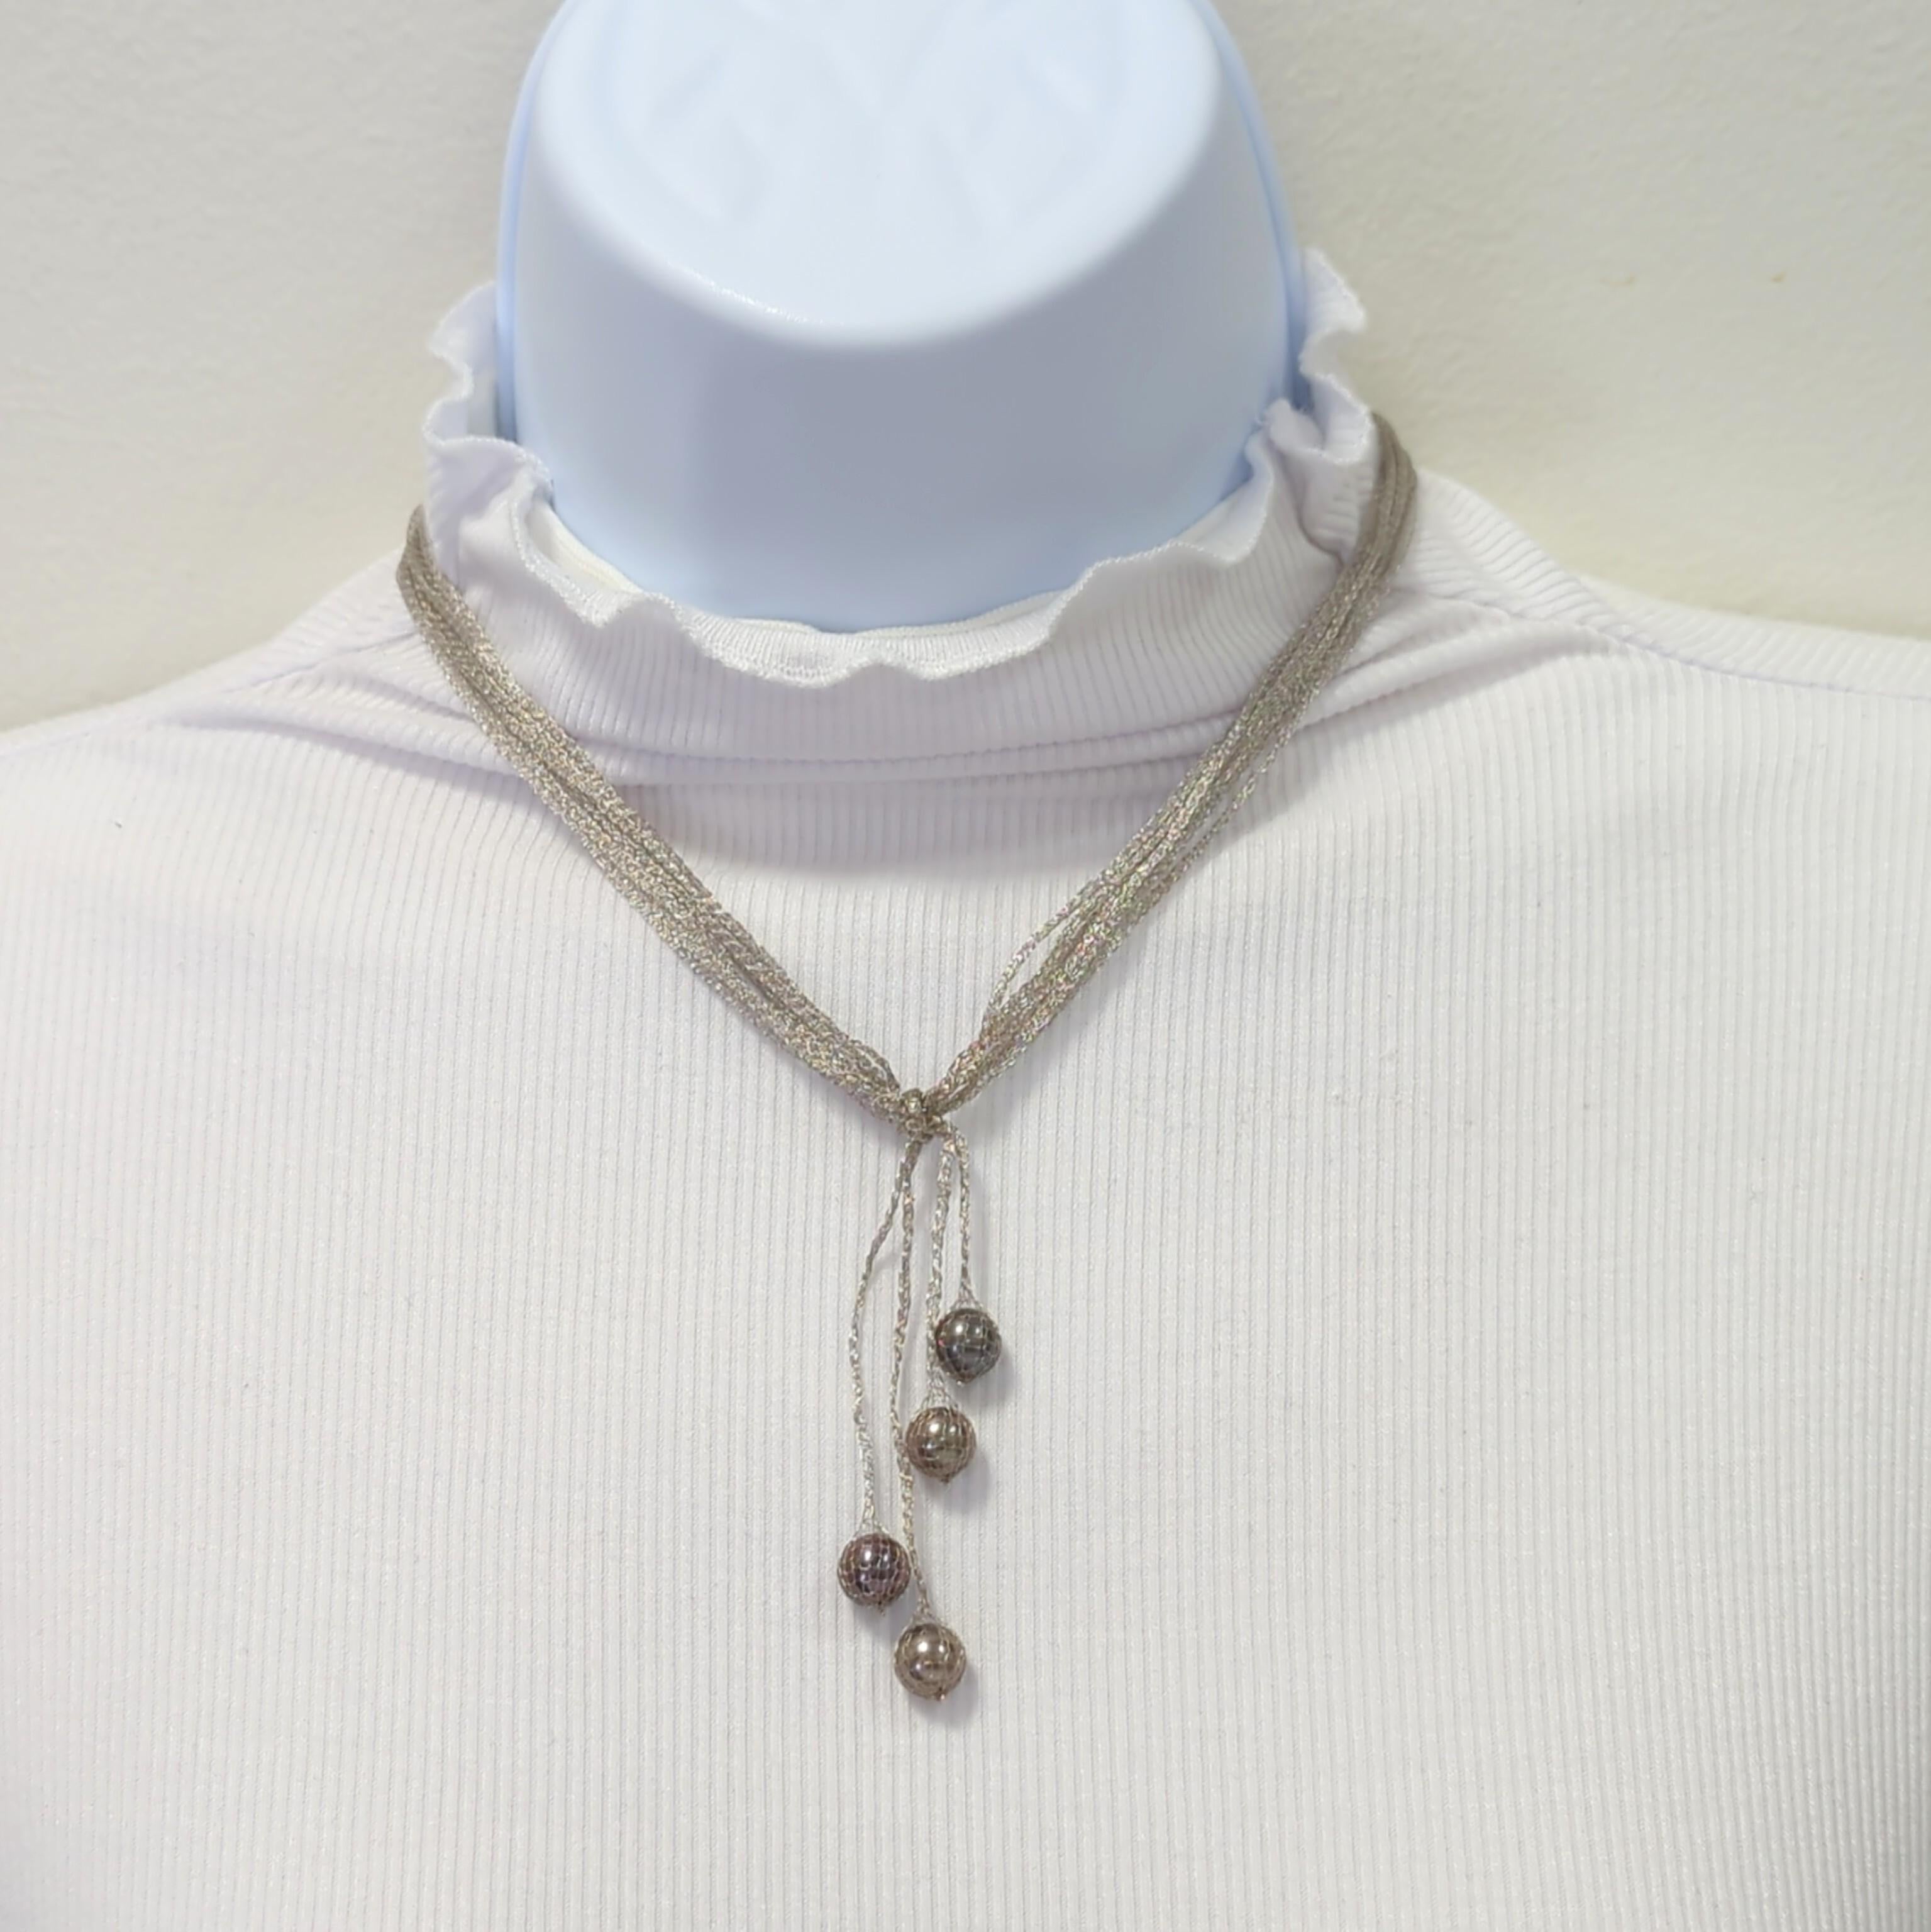 Magnifique collier de perles noires composé de 4 perles rondes d'environ 8-9 mm chacune et d'une chaîne en or blanc 18 carats.  La longueur est de 16